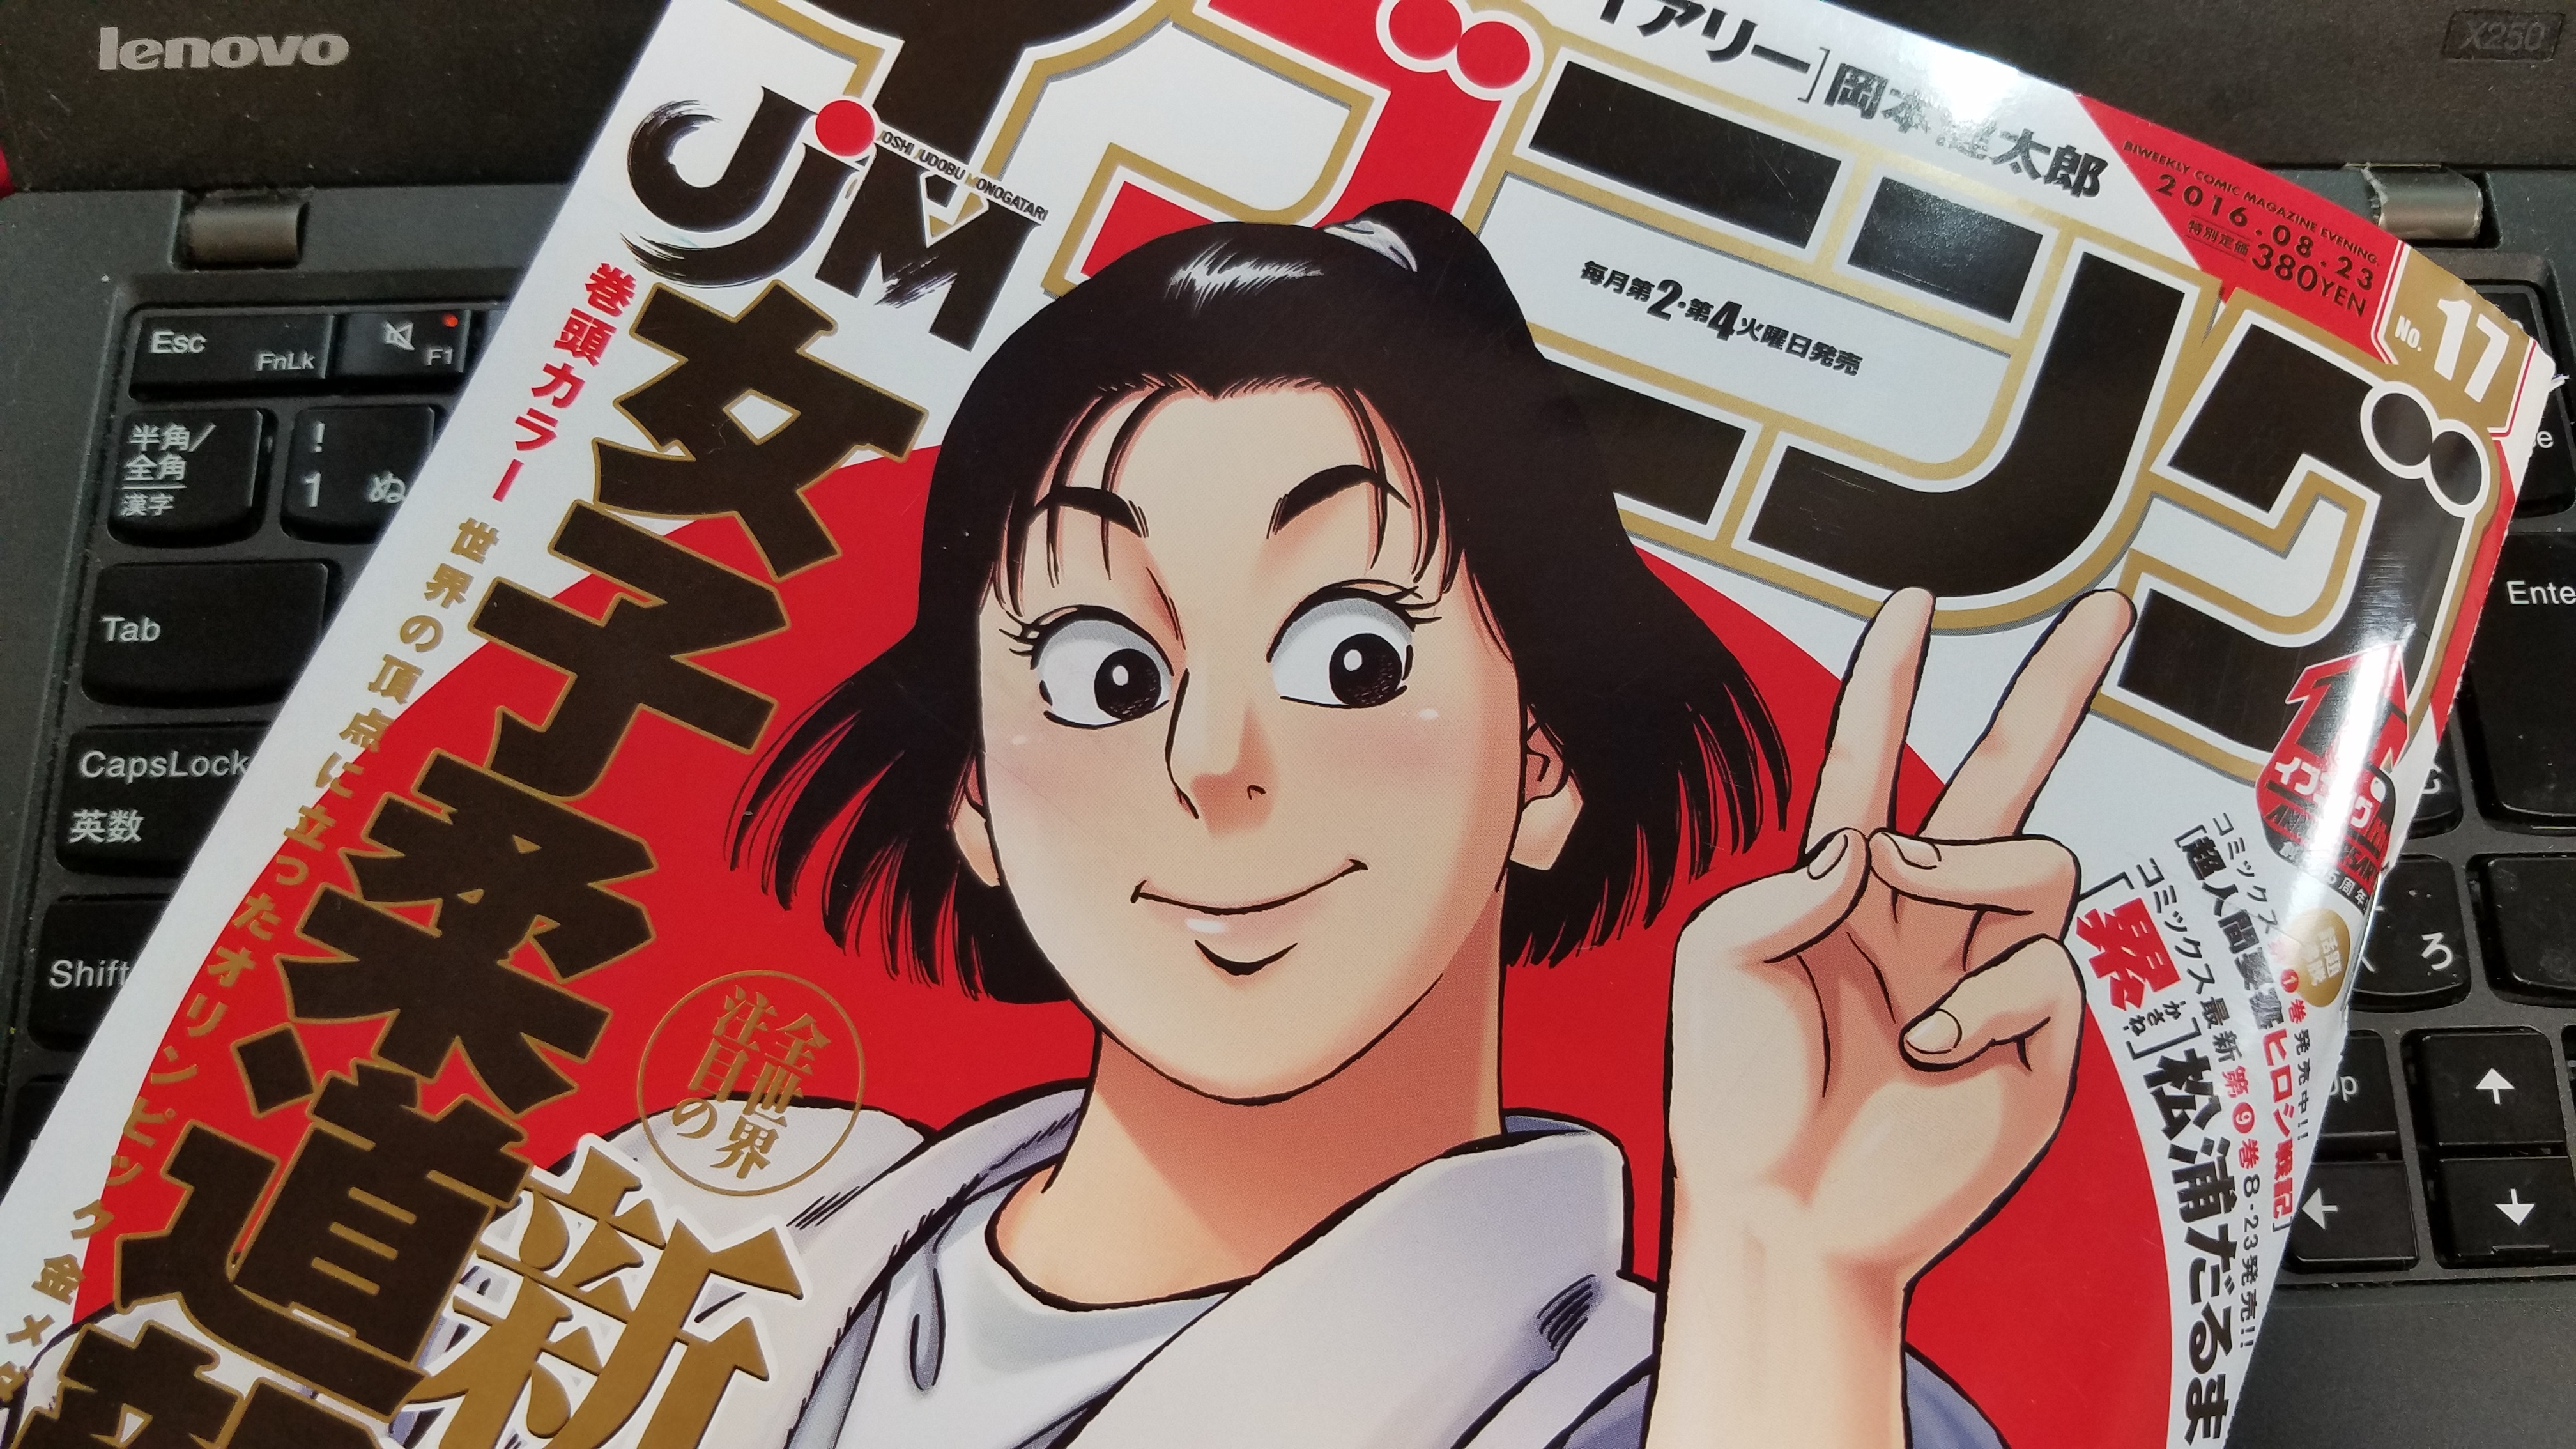 小林まことの柔道漫画の続編 女子柔道部物語 が今月から新連載 初回は三五十五も登場 明日やります